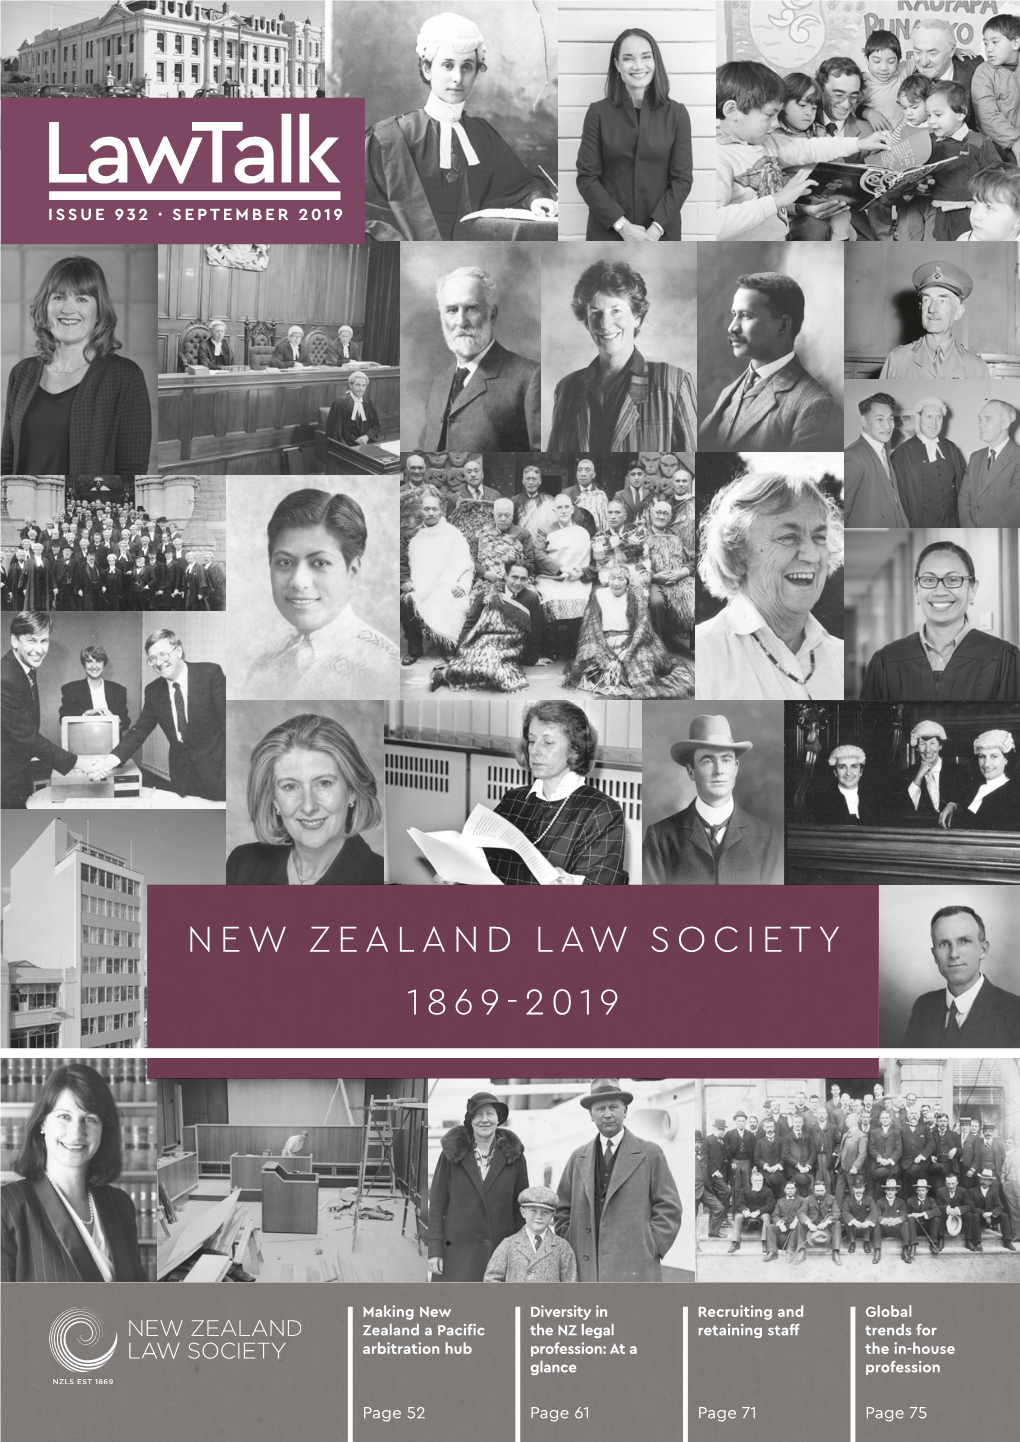 New Zealand Law Society 1869-2019